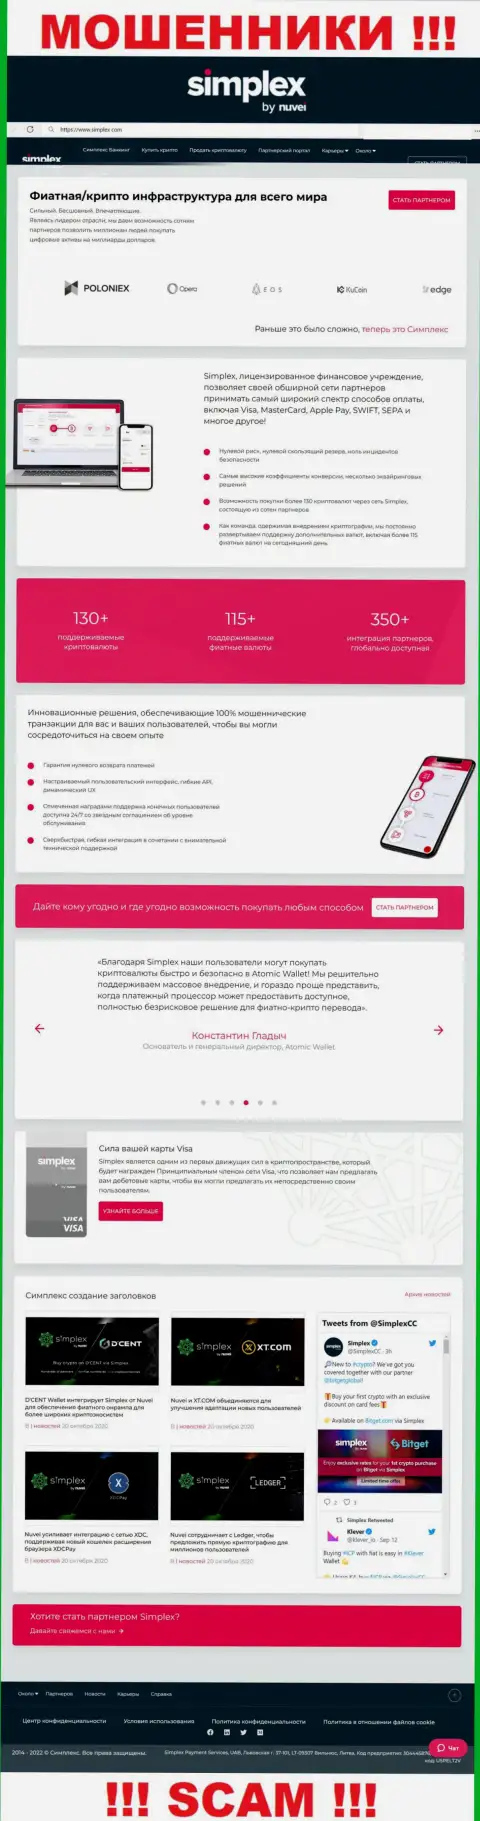 Вид web странички противозаконно действующей организации Simplex